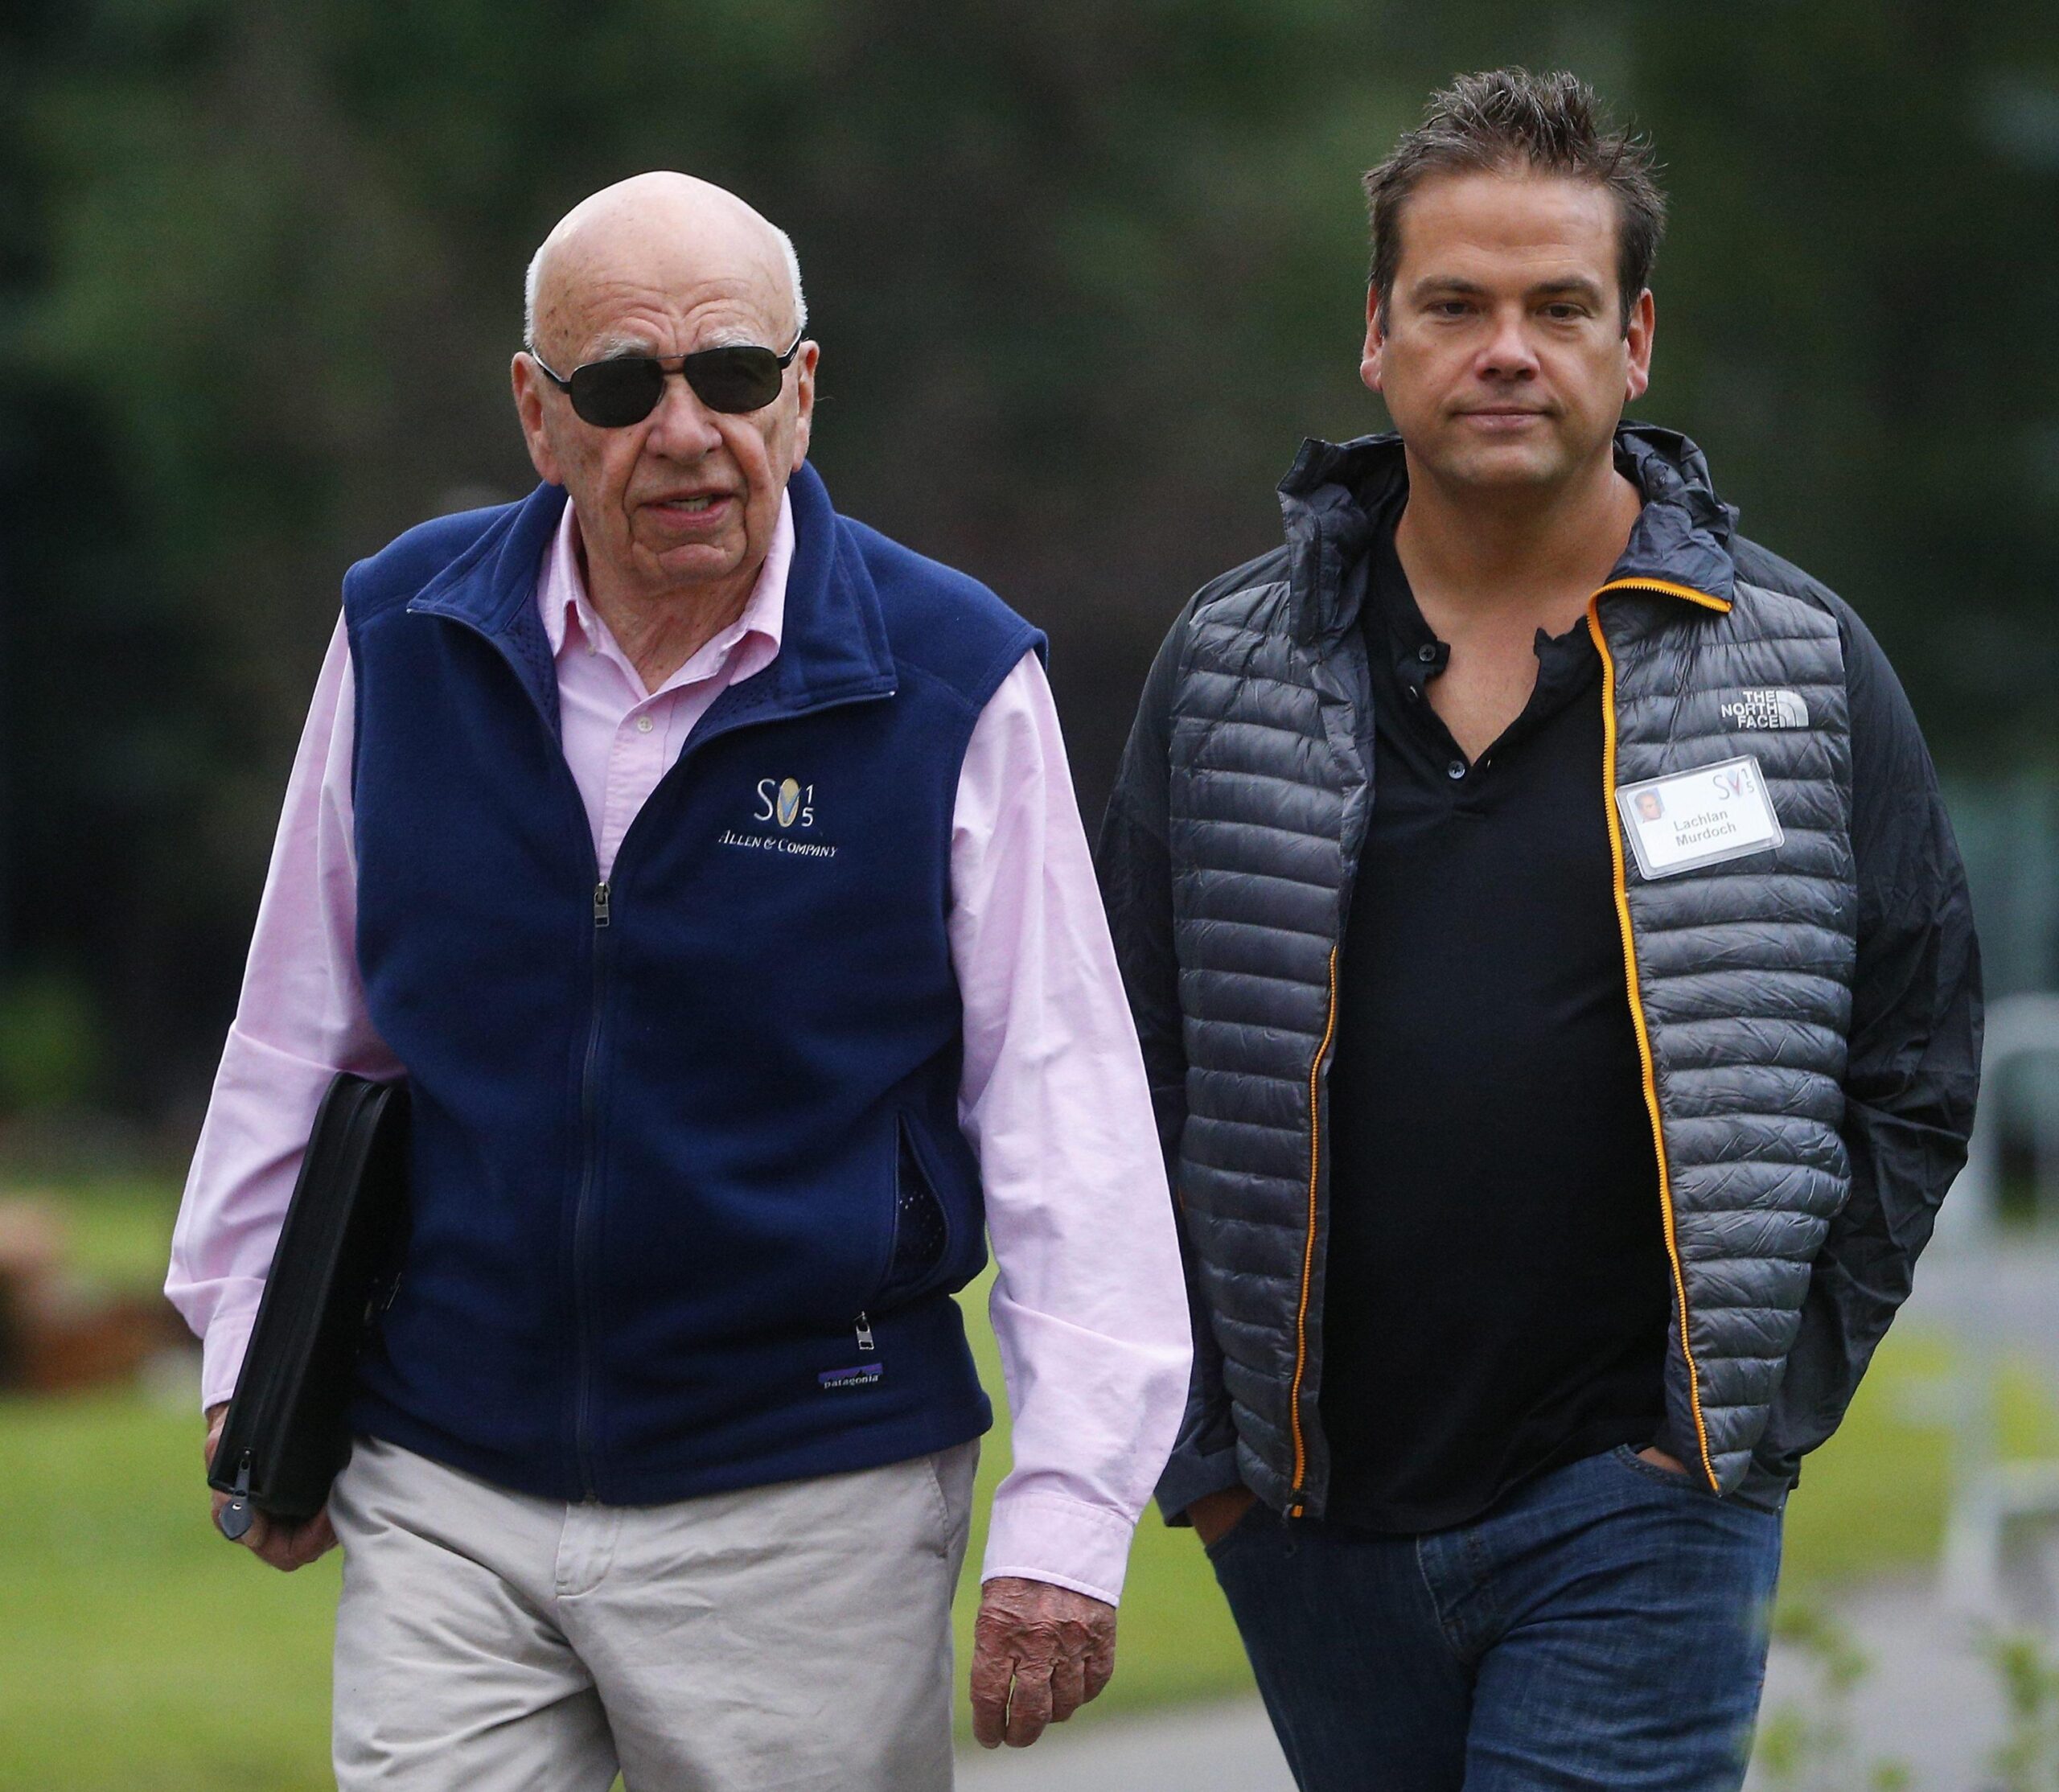 Rupert Murdoch lascia a 92 anni la presidenza di Fox e News Corp: l’impero mediatico passa al figlio Lachlan